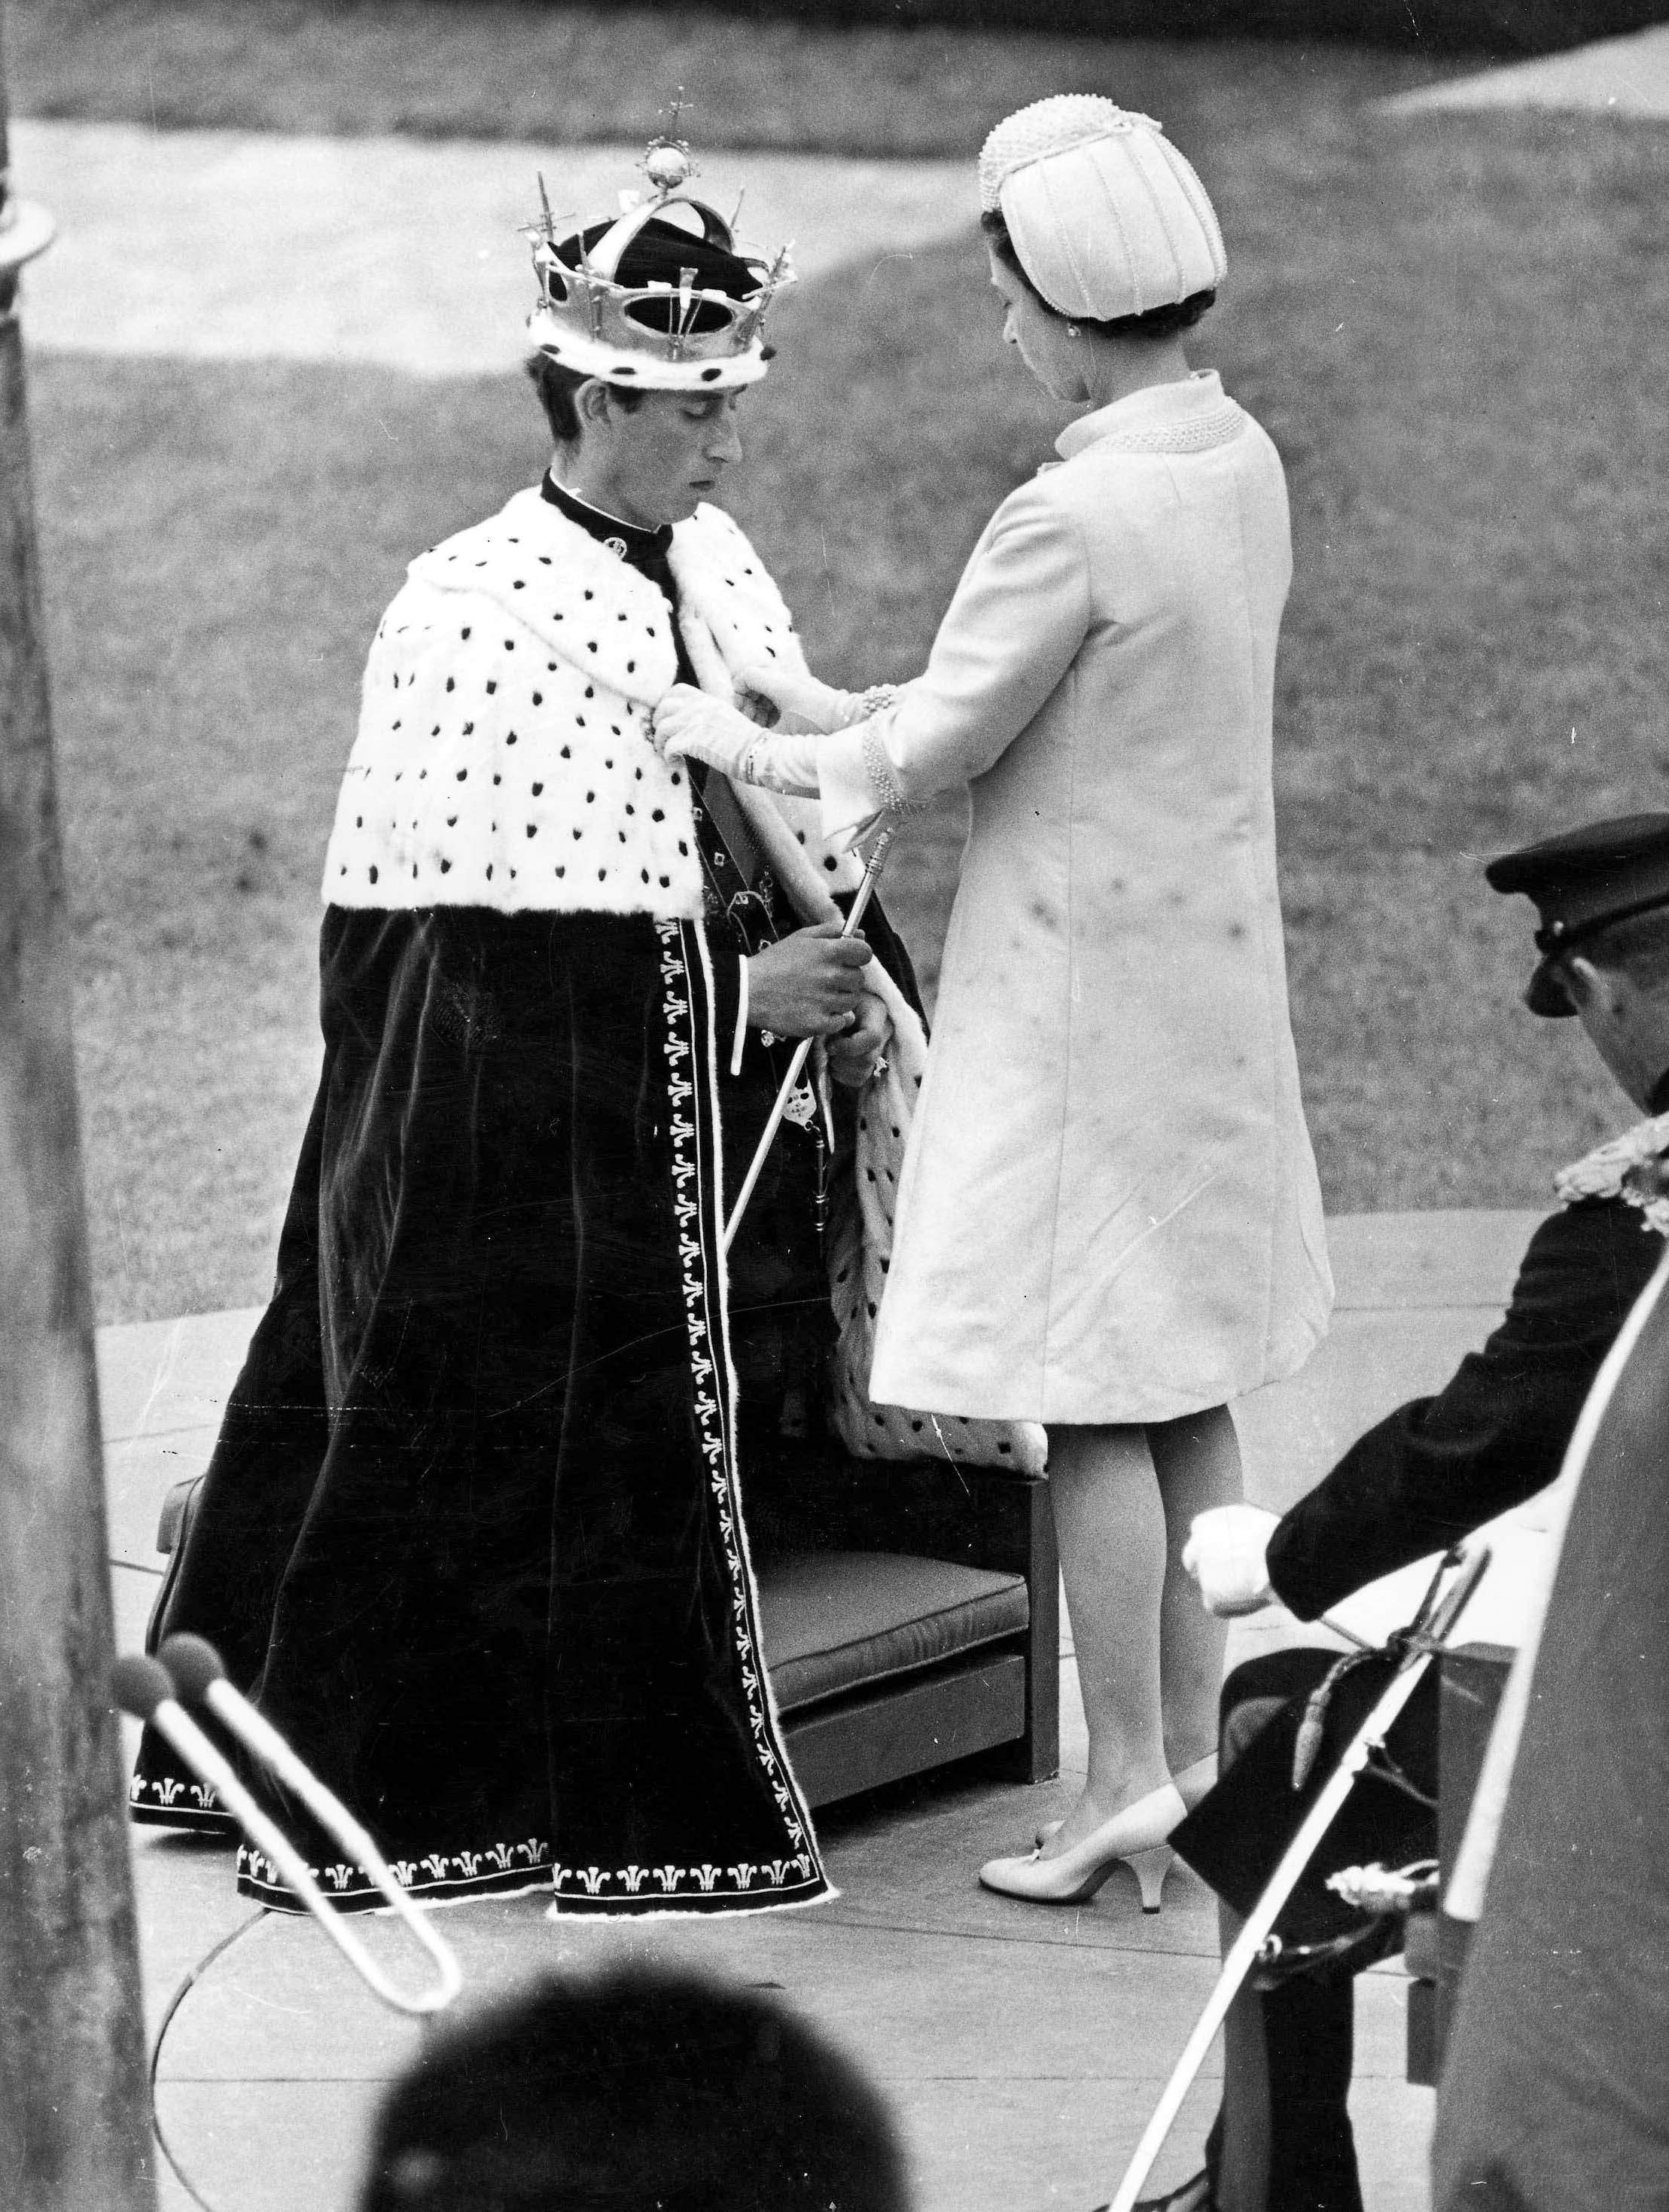 La reina Elizabeth II colocó el manto de armiño sobre los hombros del príncipe Carlos en el castillo de Caerarvon, durante la investidura del príncipe Charles como príncipe de Gales, en julio de 1969 | Foto: Getty Images